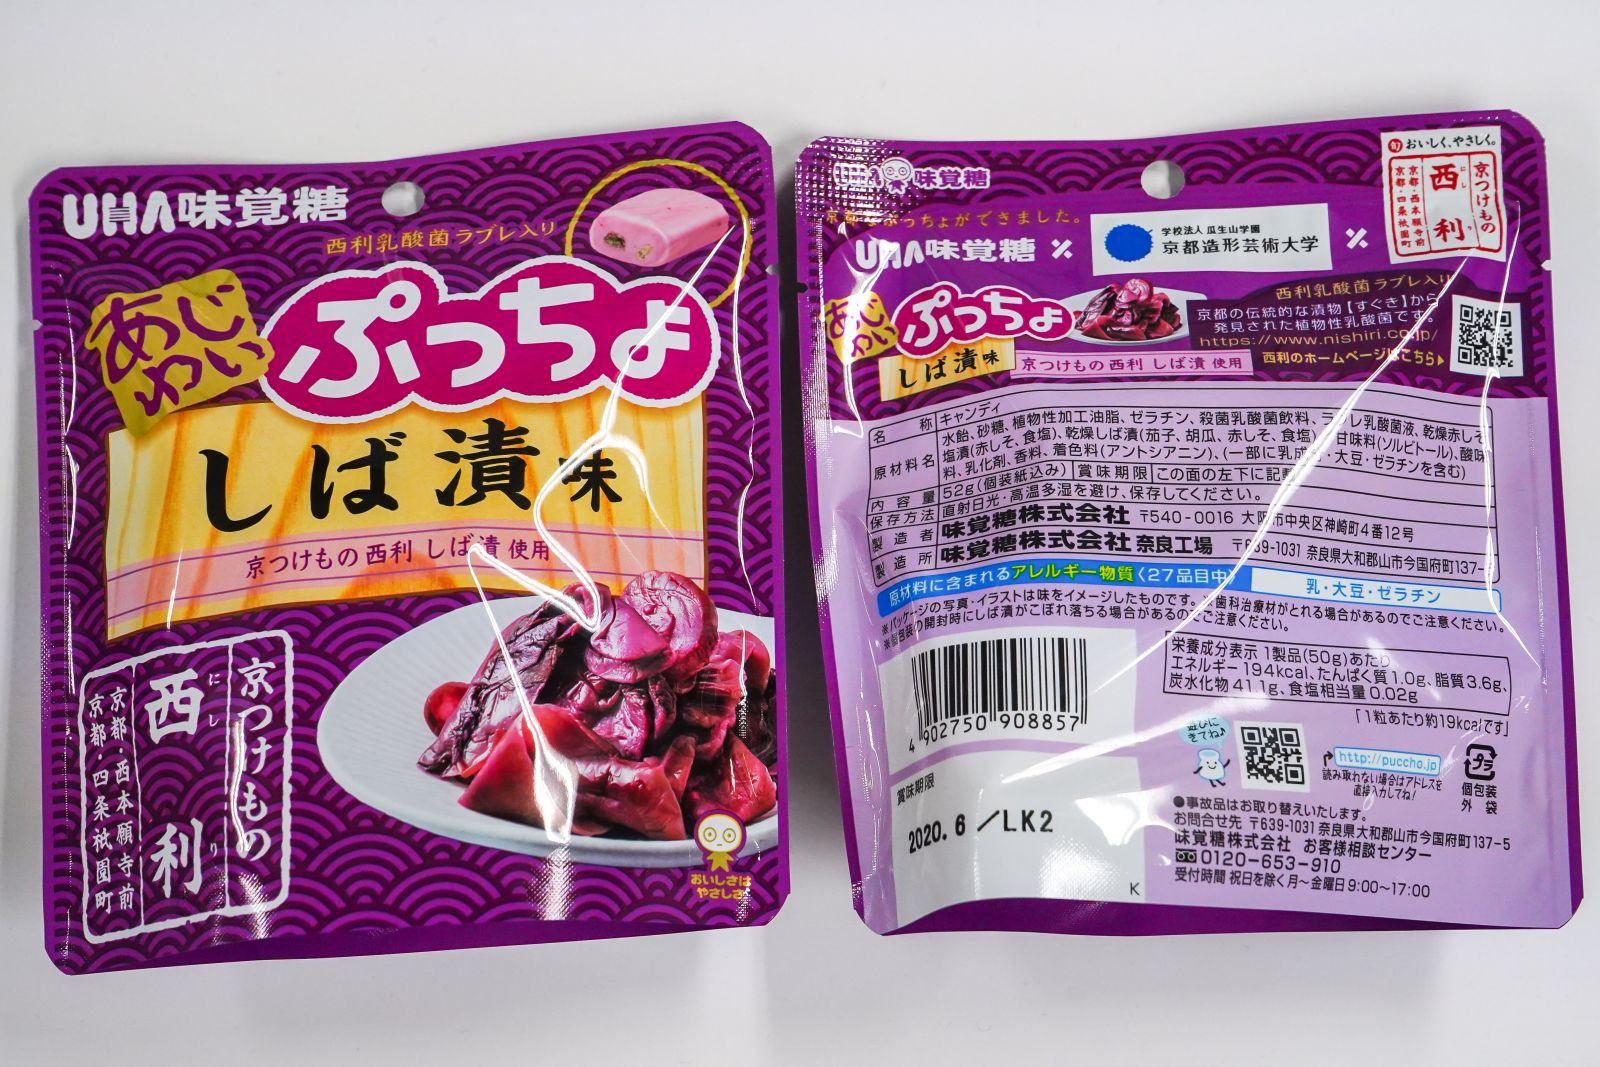 ぷっちょ しば漬味」を新しい京都土産に―学生のアイデアと人気商品がコラボ | 瓜生通信